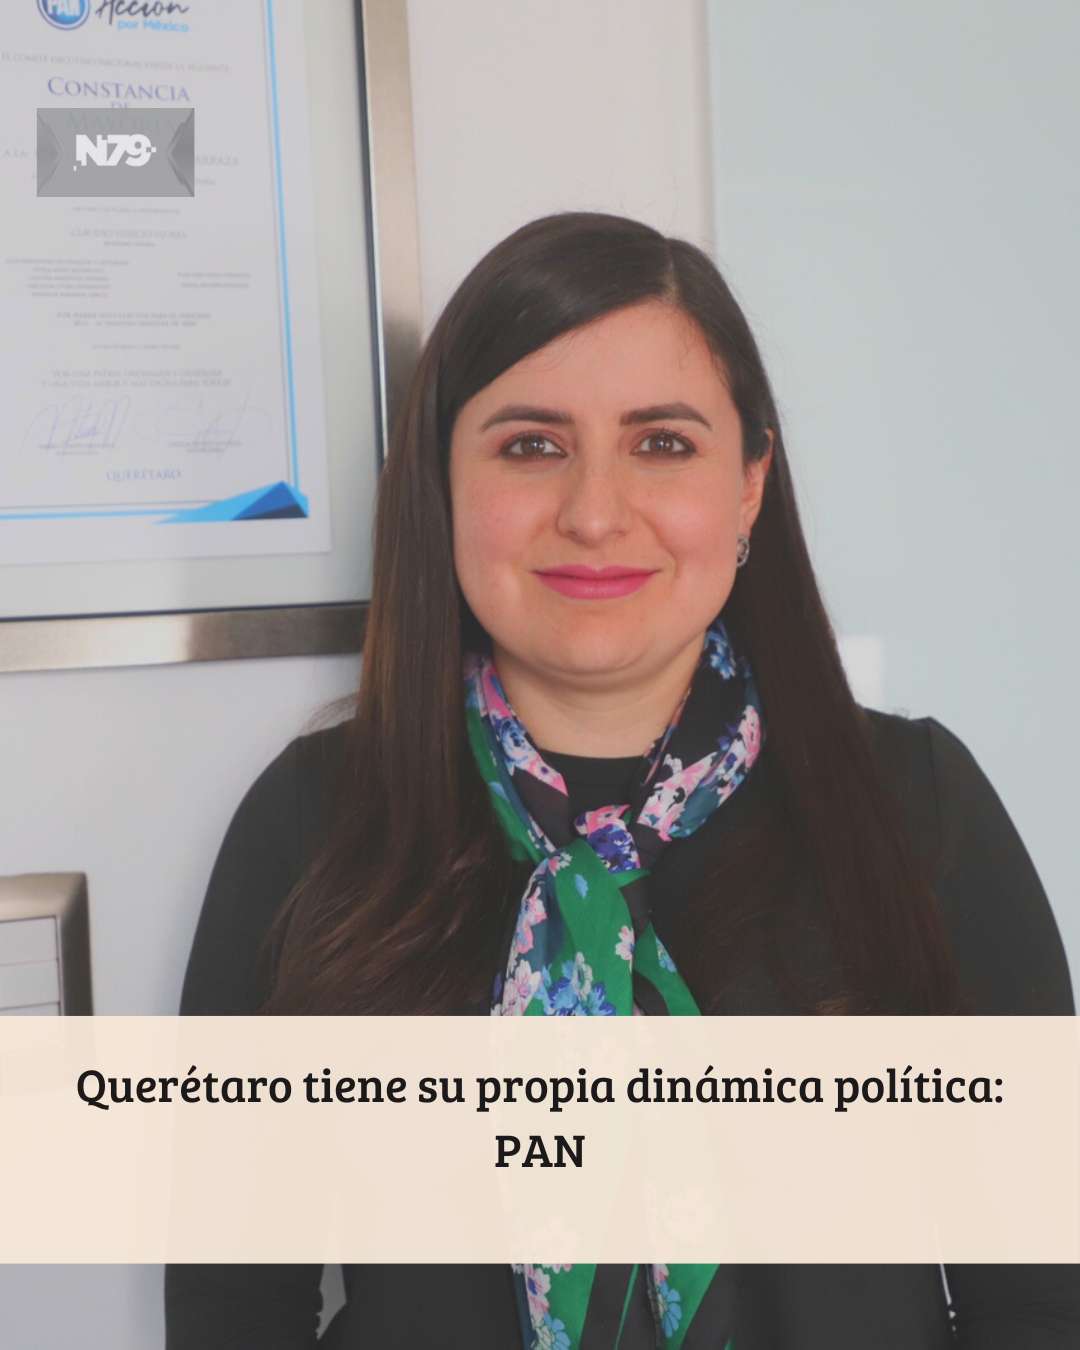 Querétaro tiene su propia dinámica política PAN